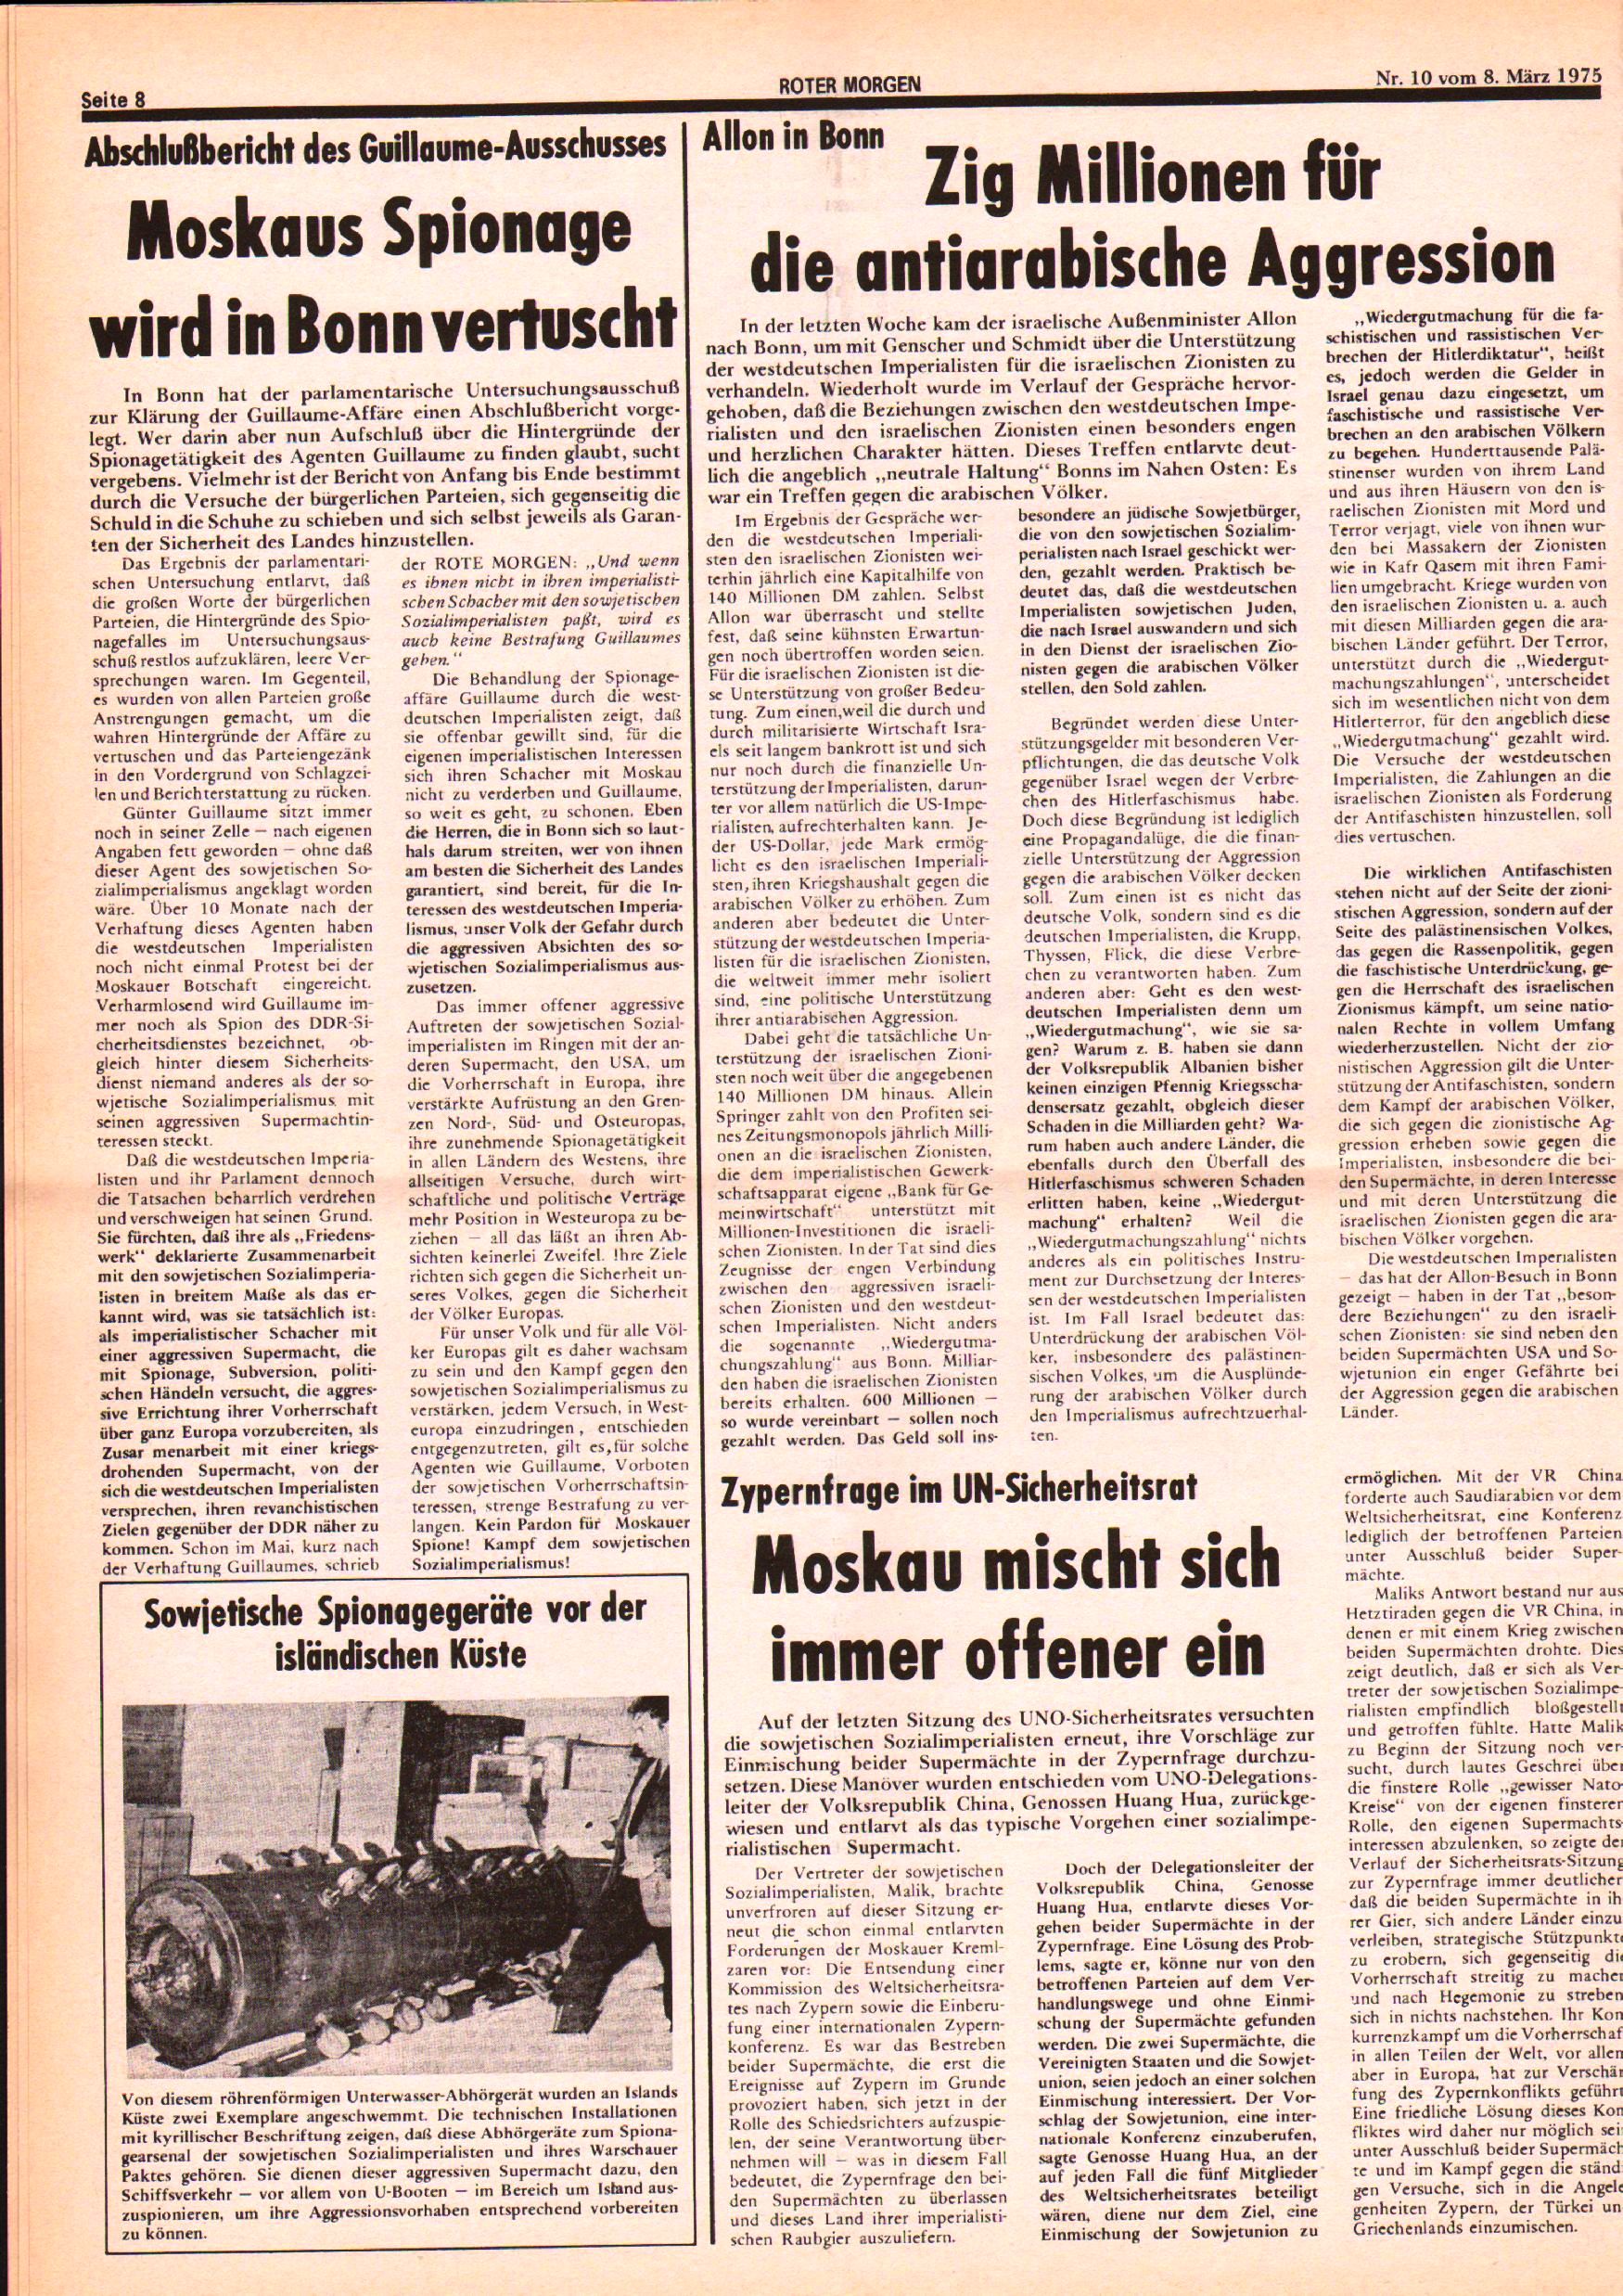 Roter Morgen, 9. Jg., 8. März 1975, Nr. 10, Seite 8